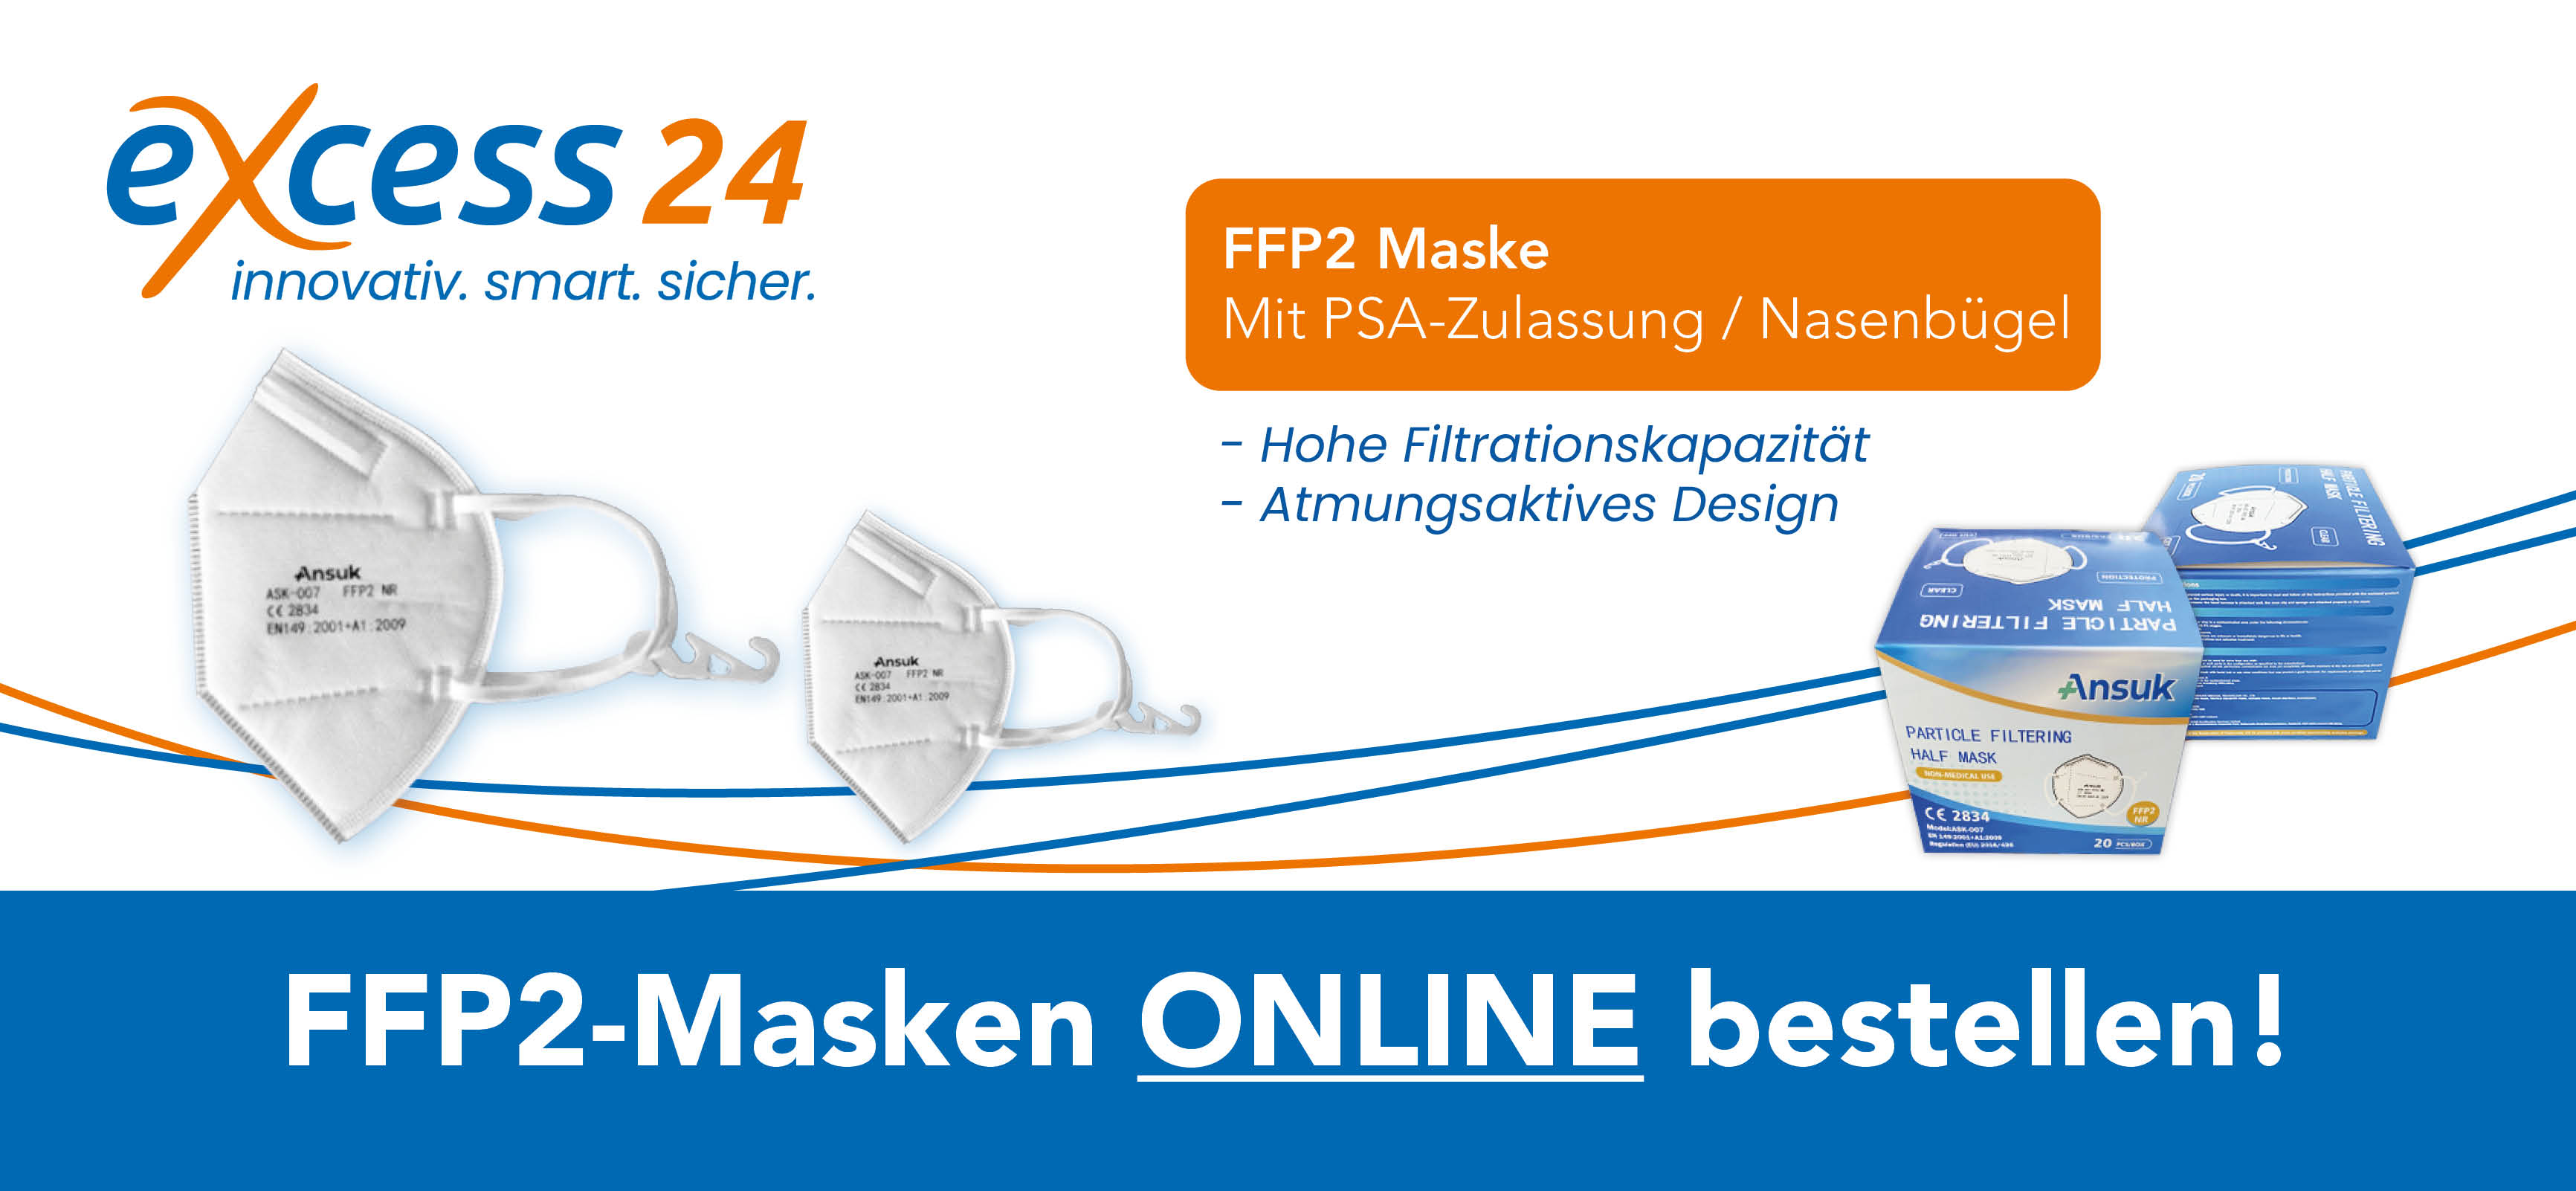 FFP2 Masken & Laien Schnelltests